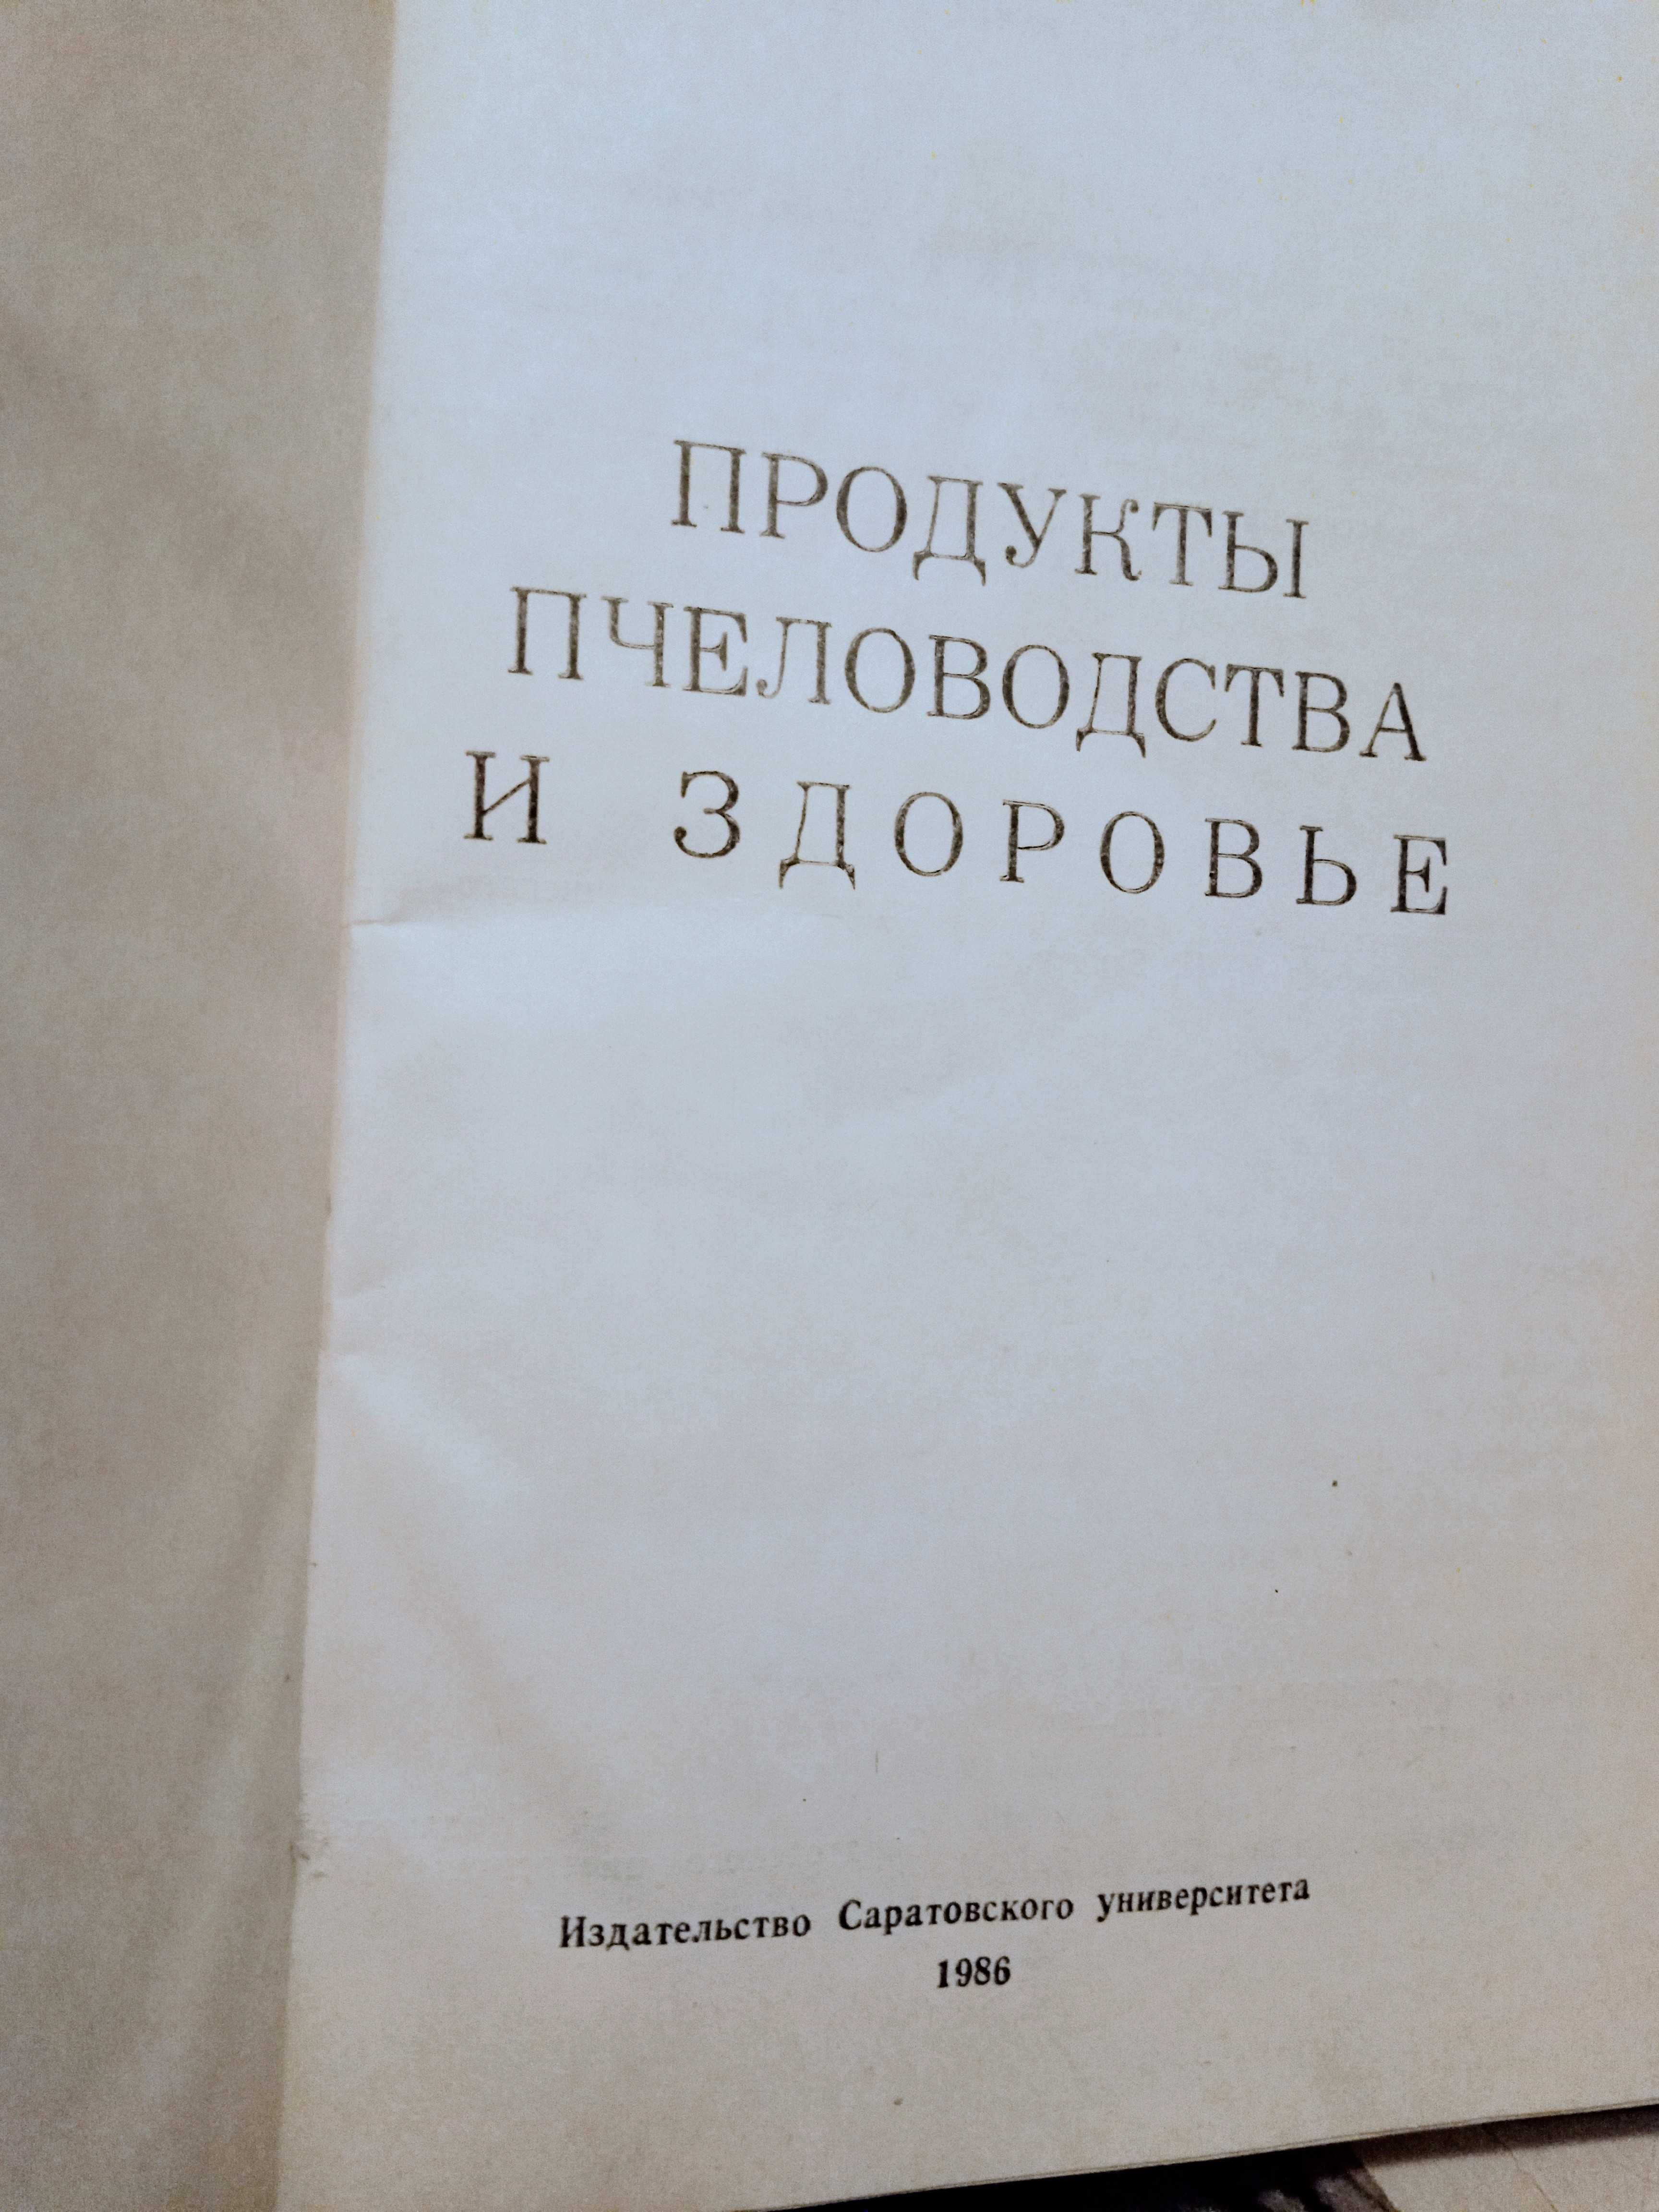 Книга (продукты пчеловодства) СССР